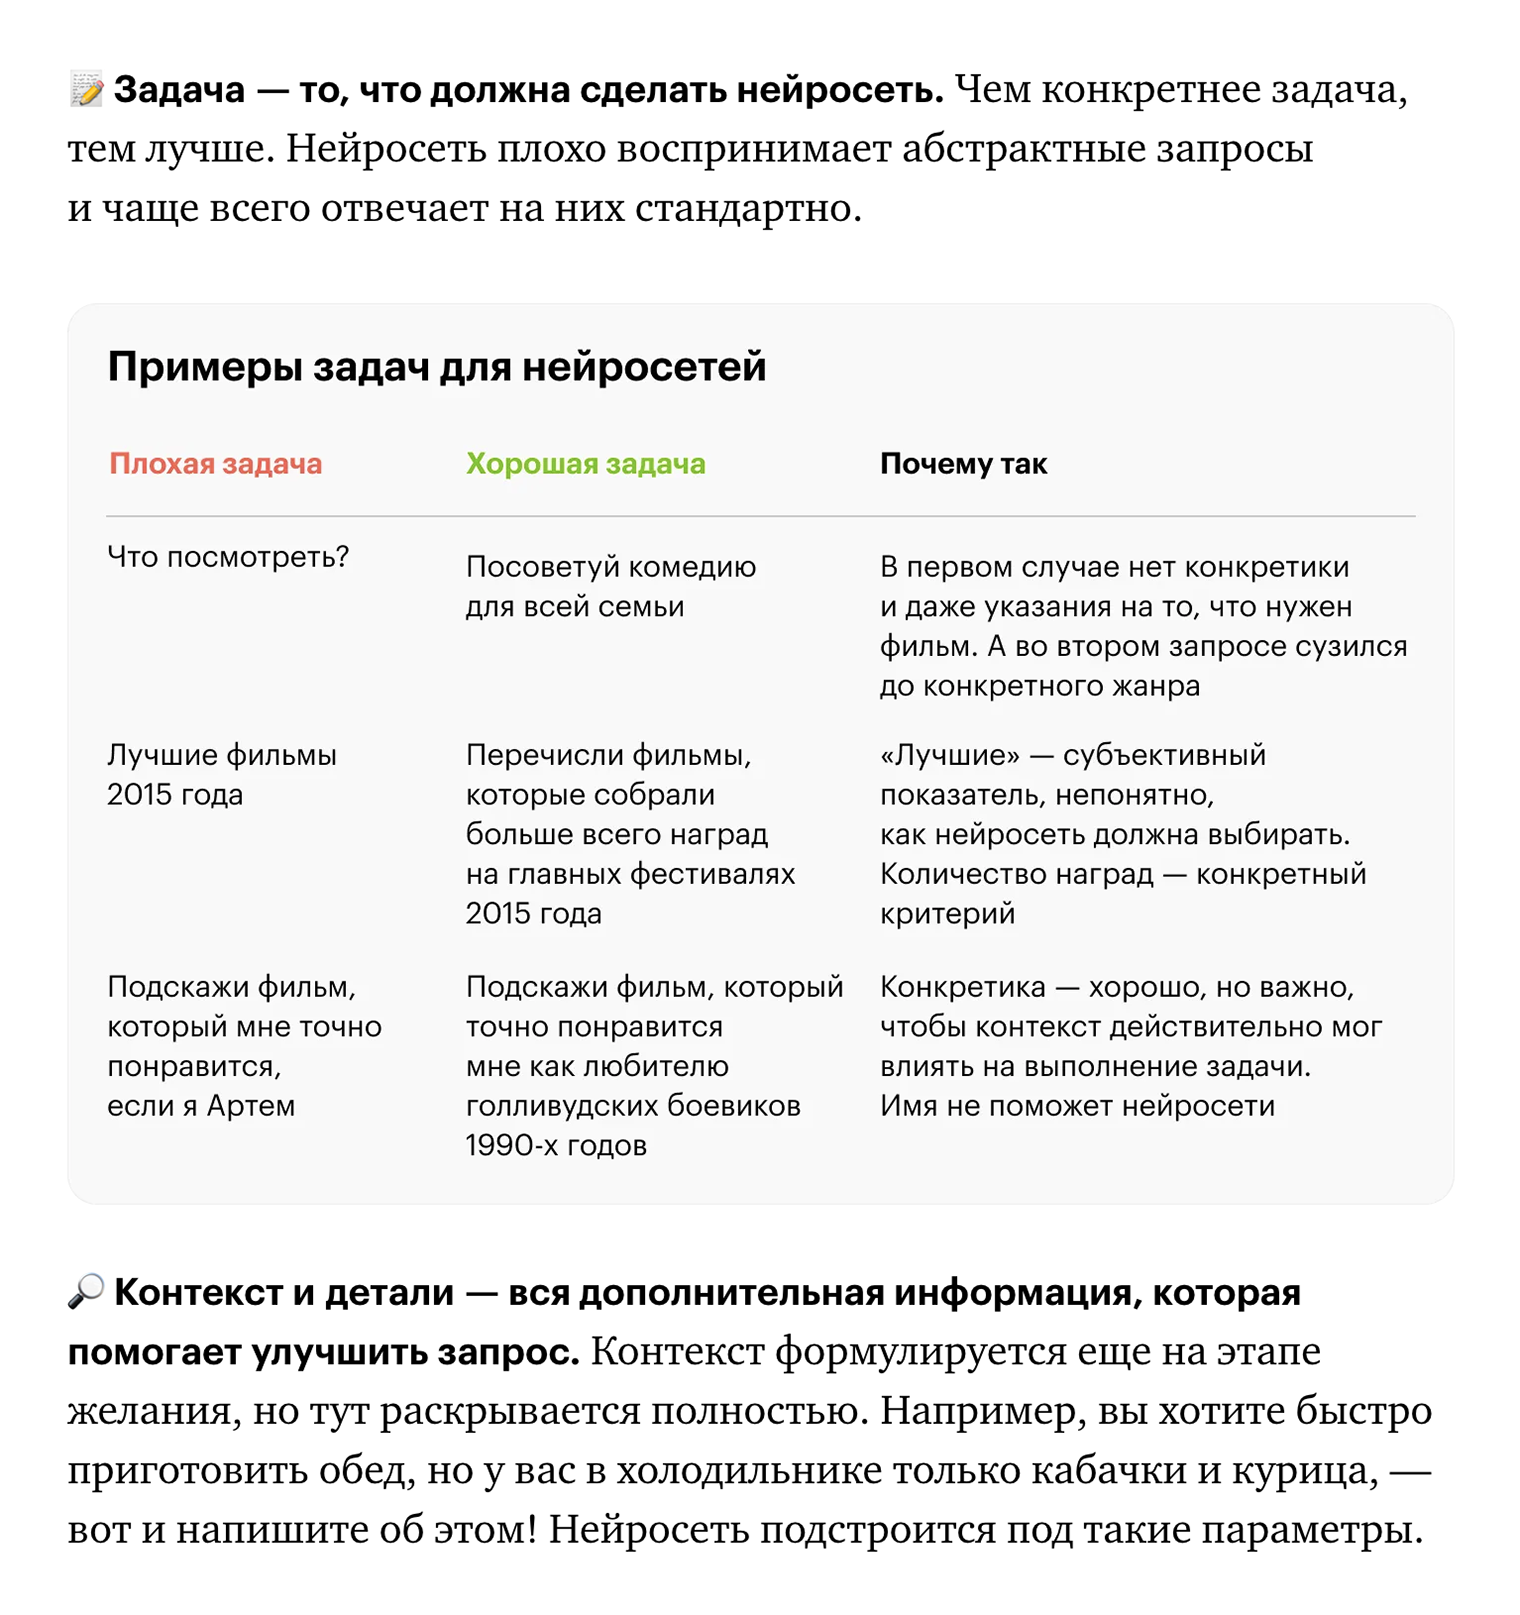 Все советы отрабатывают на упражнениях с примерами запросов. Источник: journal.tinkoff.ru